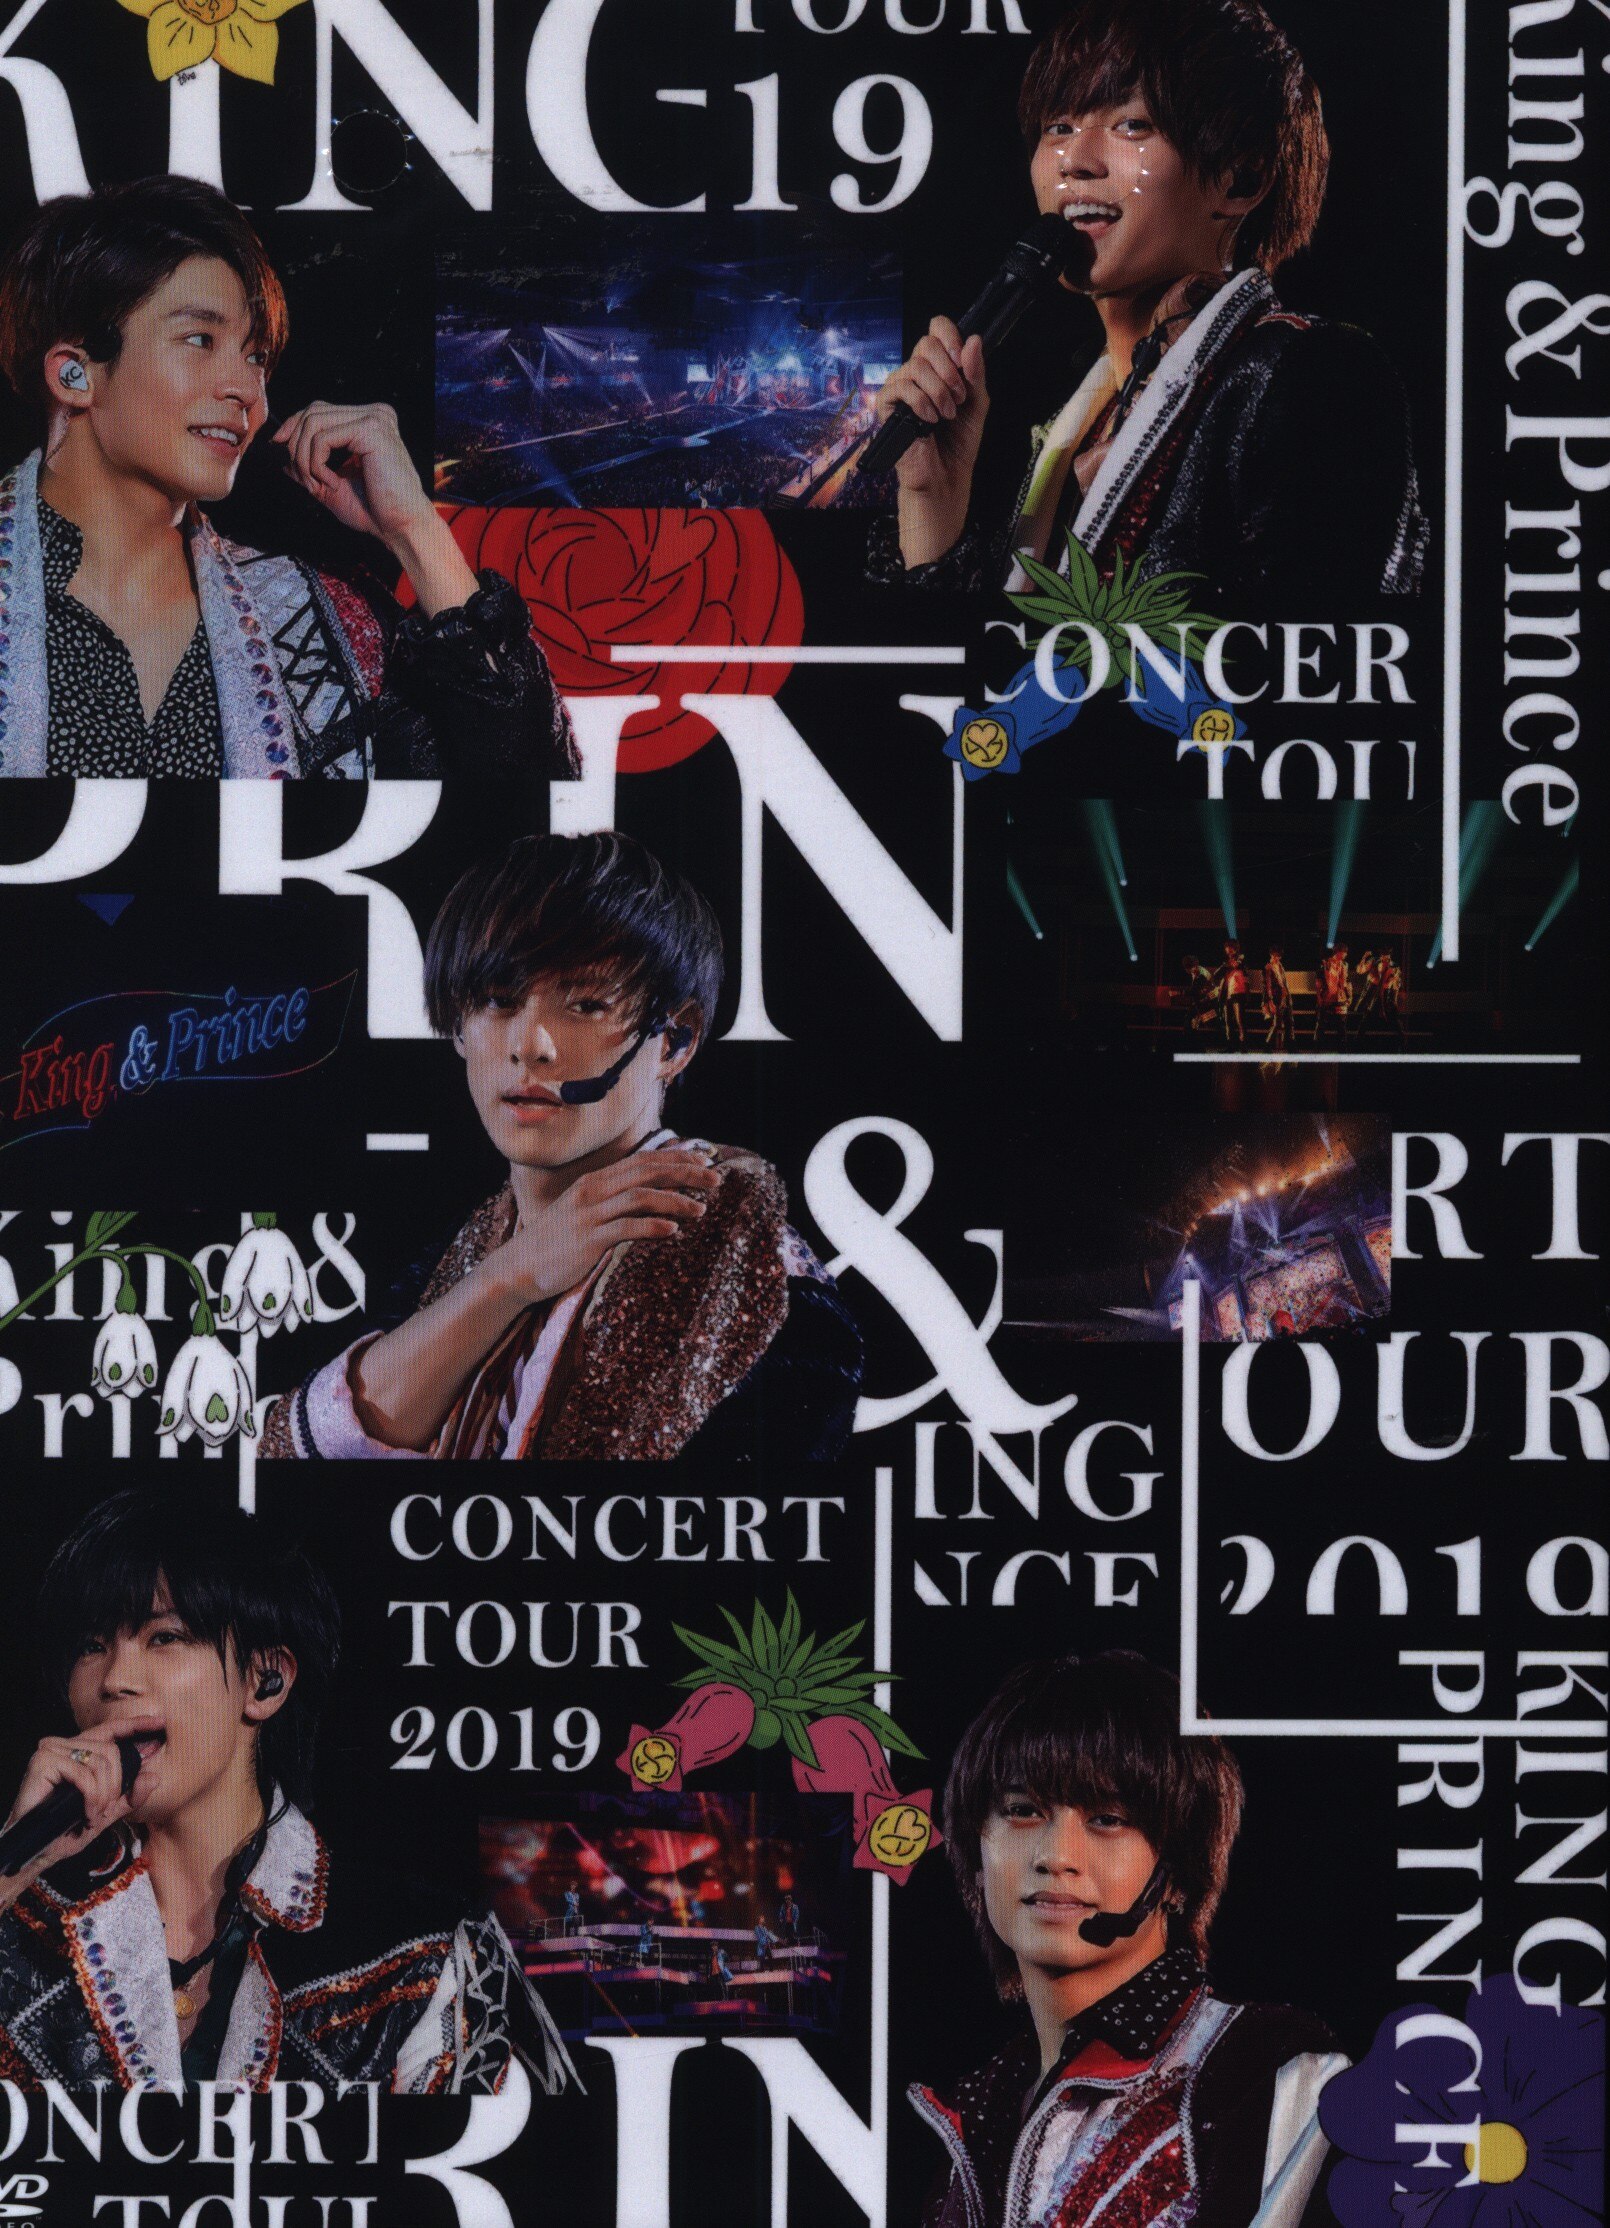 King＆Prince DVD初回限定盤 King＆Prince Concert Tour 2019 ...